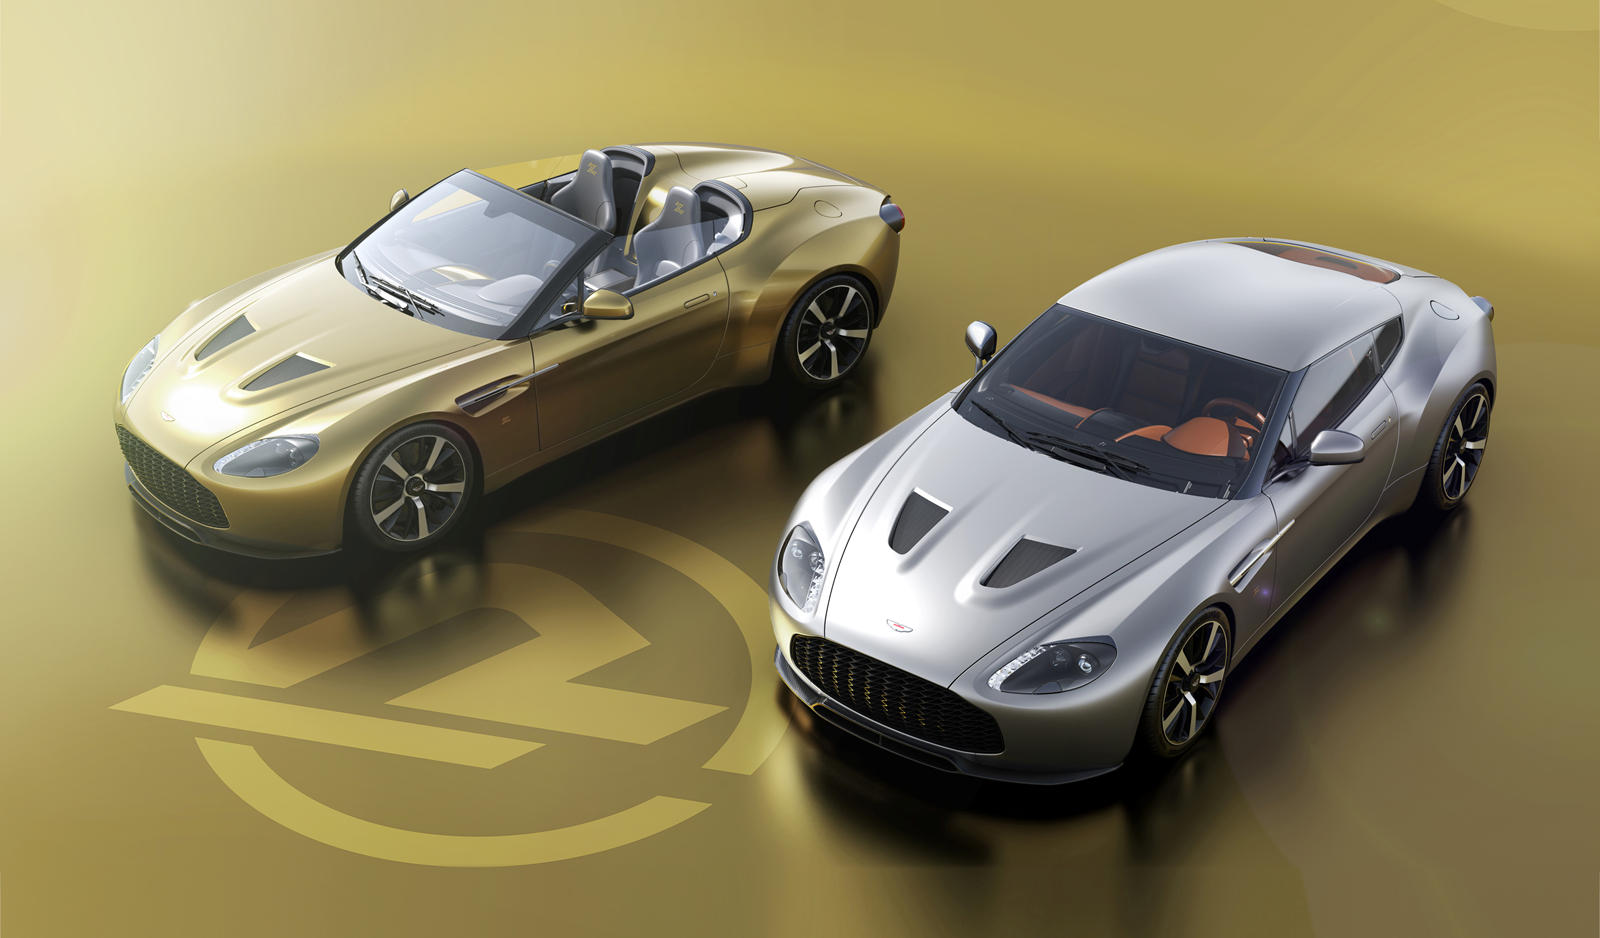 Автомобили будут основаны на модели Aston Martin Vantage V12 Zagato 2011 года, в каждом примере будут представлены культовые дизайнерские реплики Zagato, в том числе крыша с двумя пузырями на купе и эксклюзивная золотая эмблема Z в честь 100-летия. В